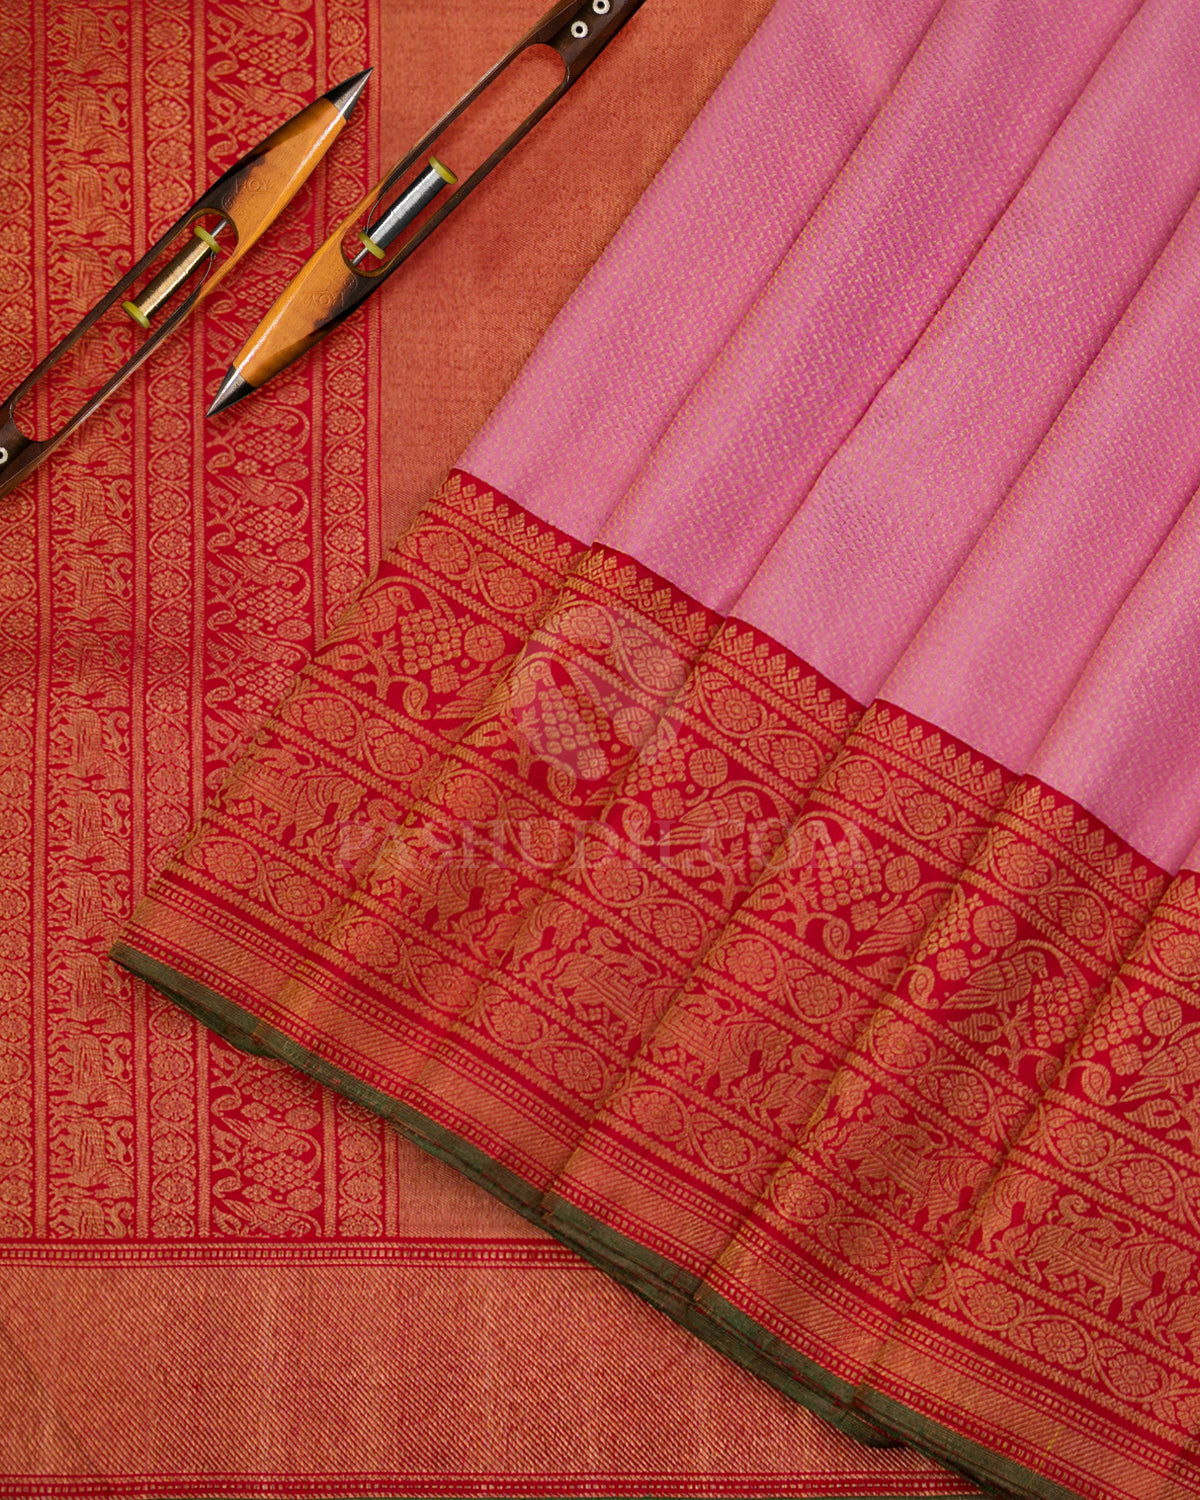 Baby Pink & Red Kanjivaram Silk Saree - S994 - View 2